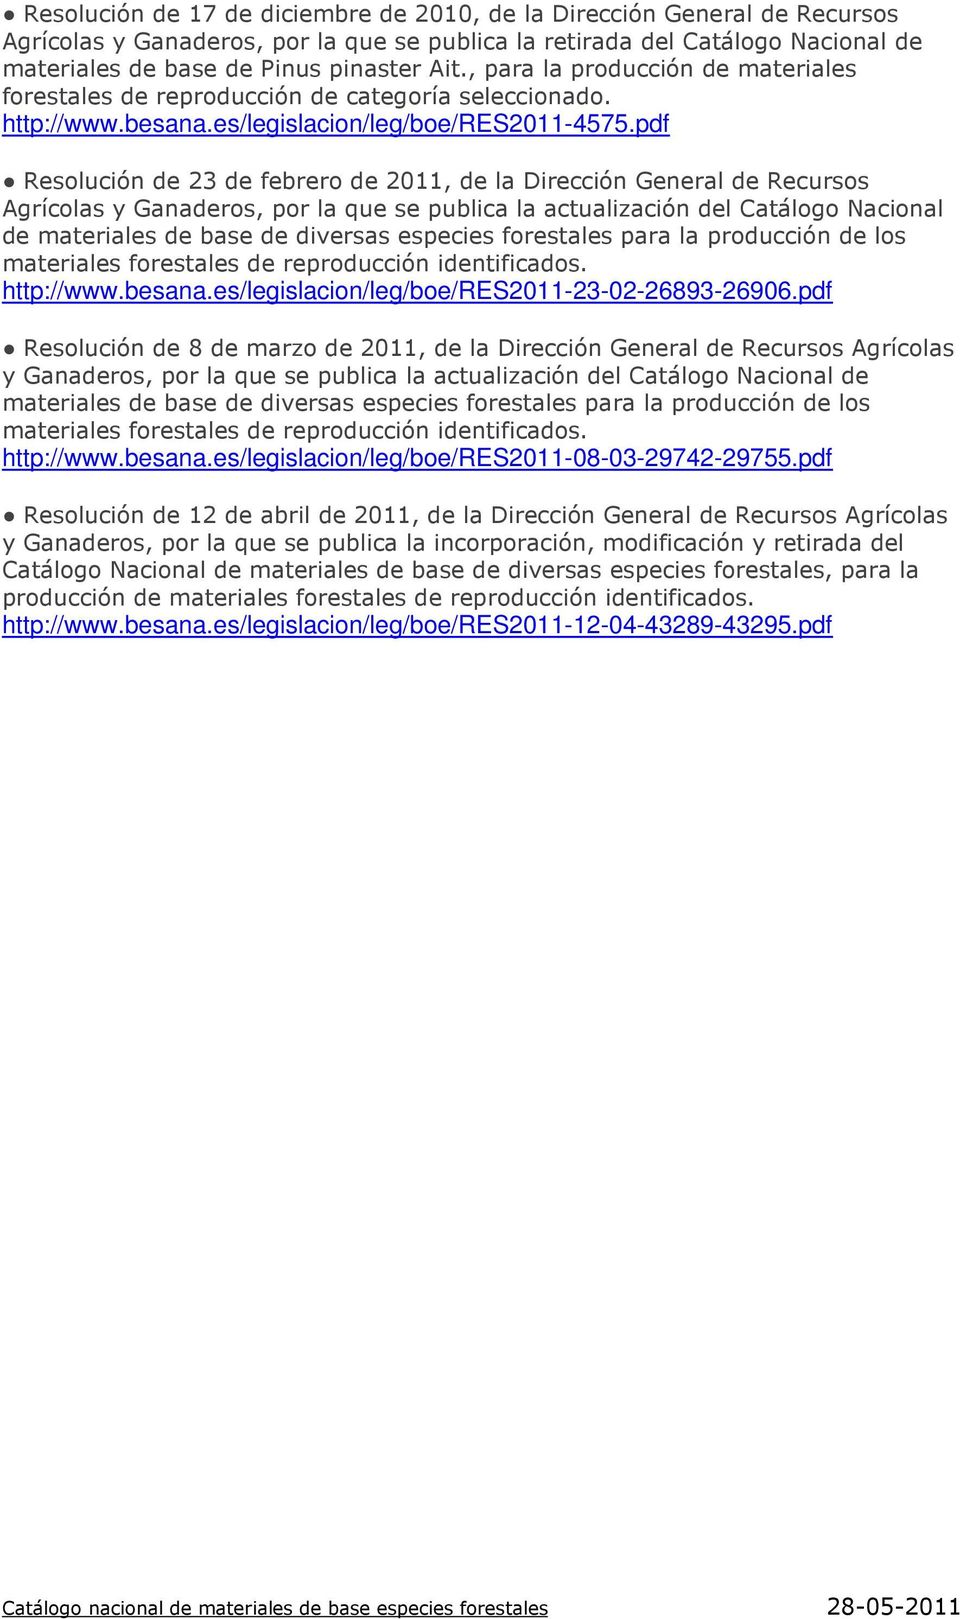 pdf Resolución de 23 de febrero de 2011, de la Dirección General de Recursos Agrícolas y Ganaderos, por la que se publica la actualización del Catálogo Nacional de http://www.besana.